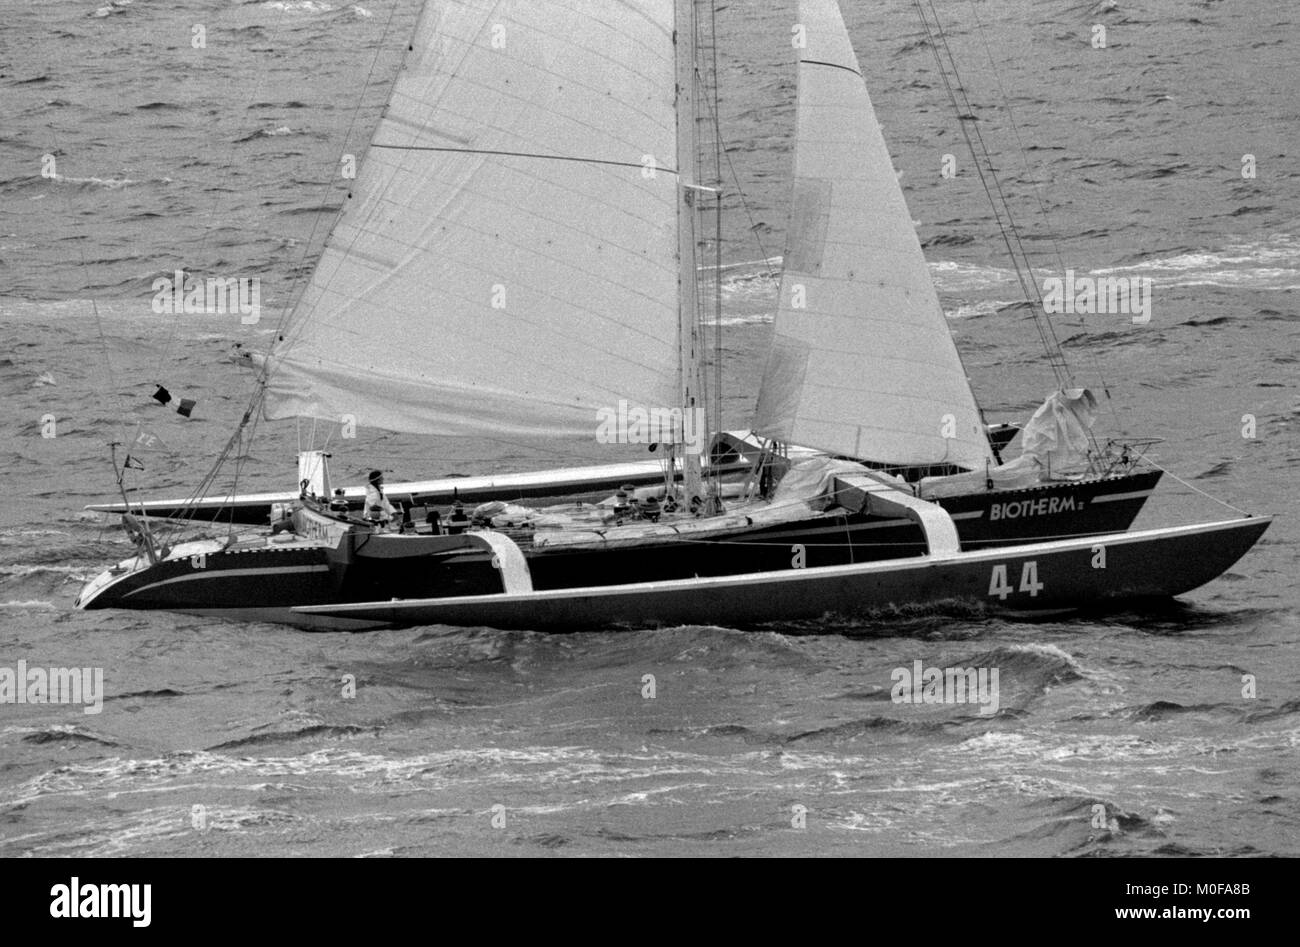 AJAXNETPHOTO. Novembre 1982 - ROUTE DU RHUM - BIOTHERM II (Florence Arthaud) au démarrage. PHOTO:JONATHAN EASTLAND/AJAX REF:821007 f1087 Banque D'Images